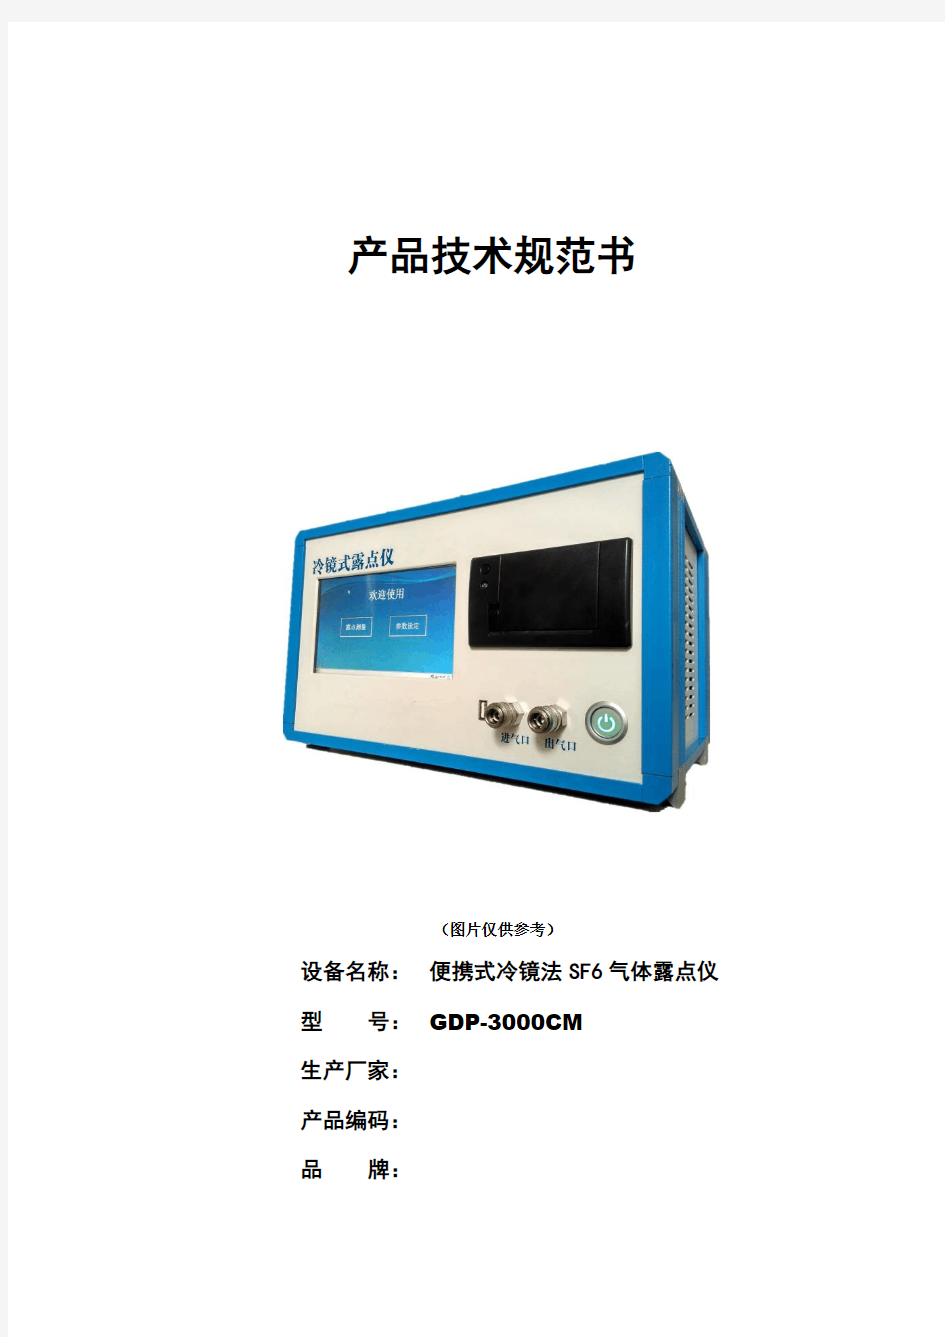 GDP-3000CM便携式冷镜法SF6气体露点仪技术规范书2019